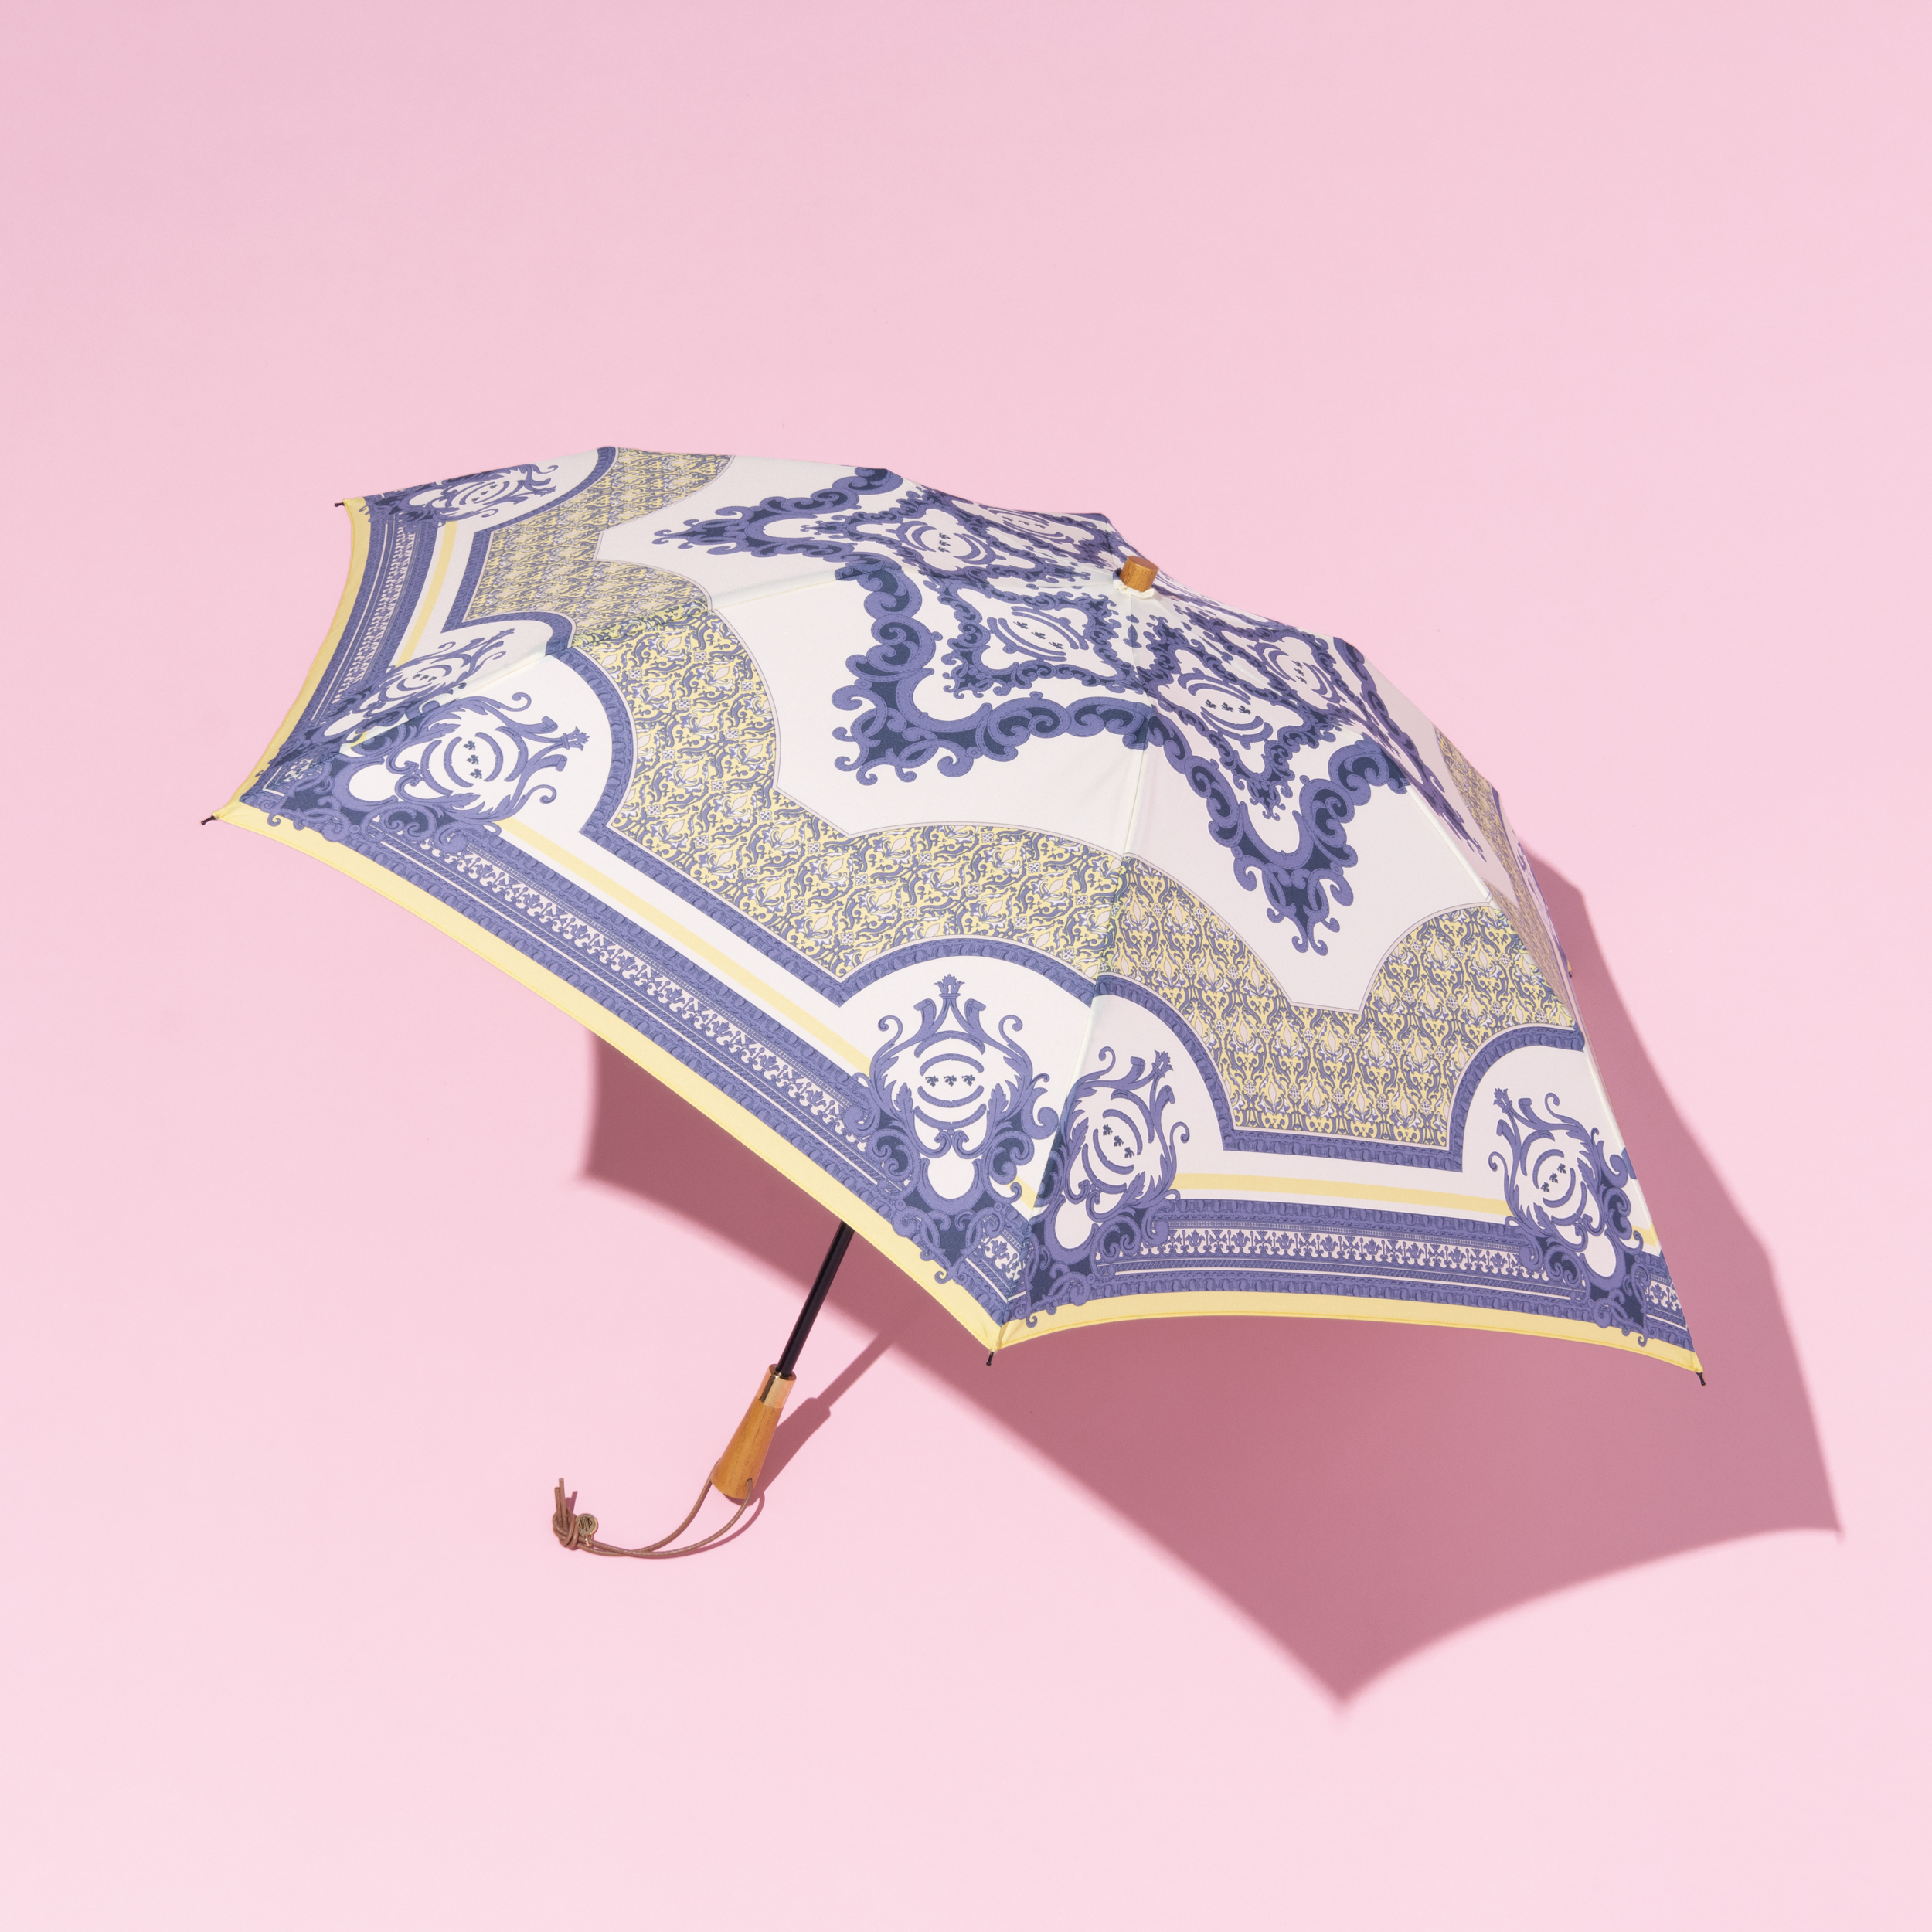 マニプリの日傘の撮りおろし画像